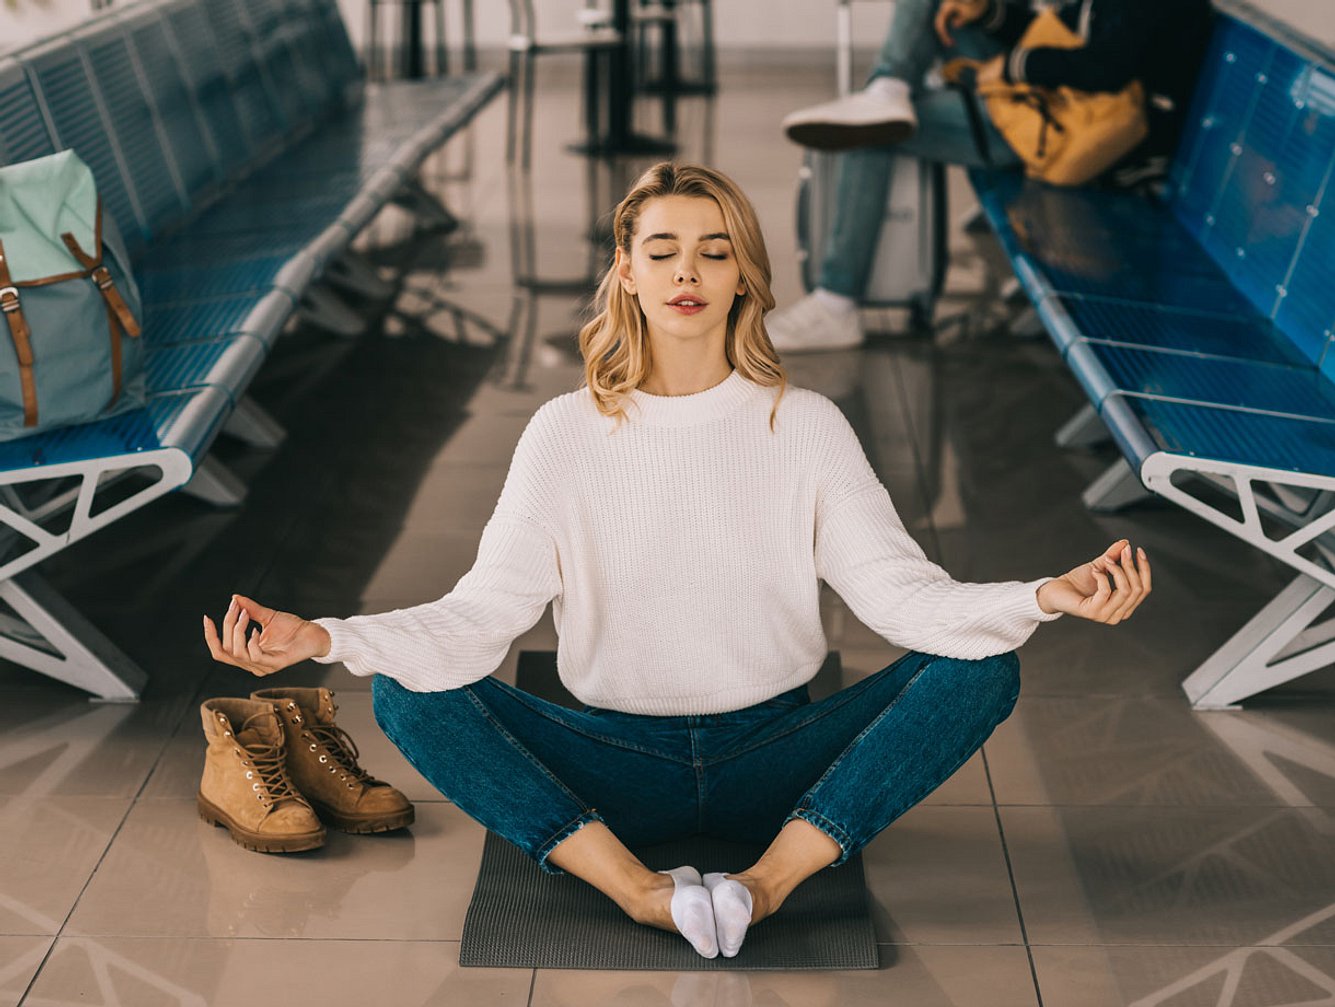 Reise-Yogamatte am Flughafen mit Frau